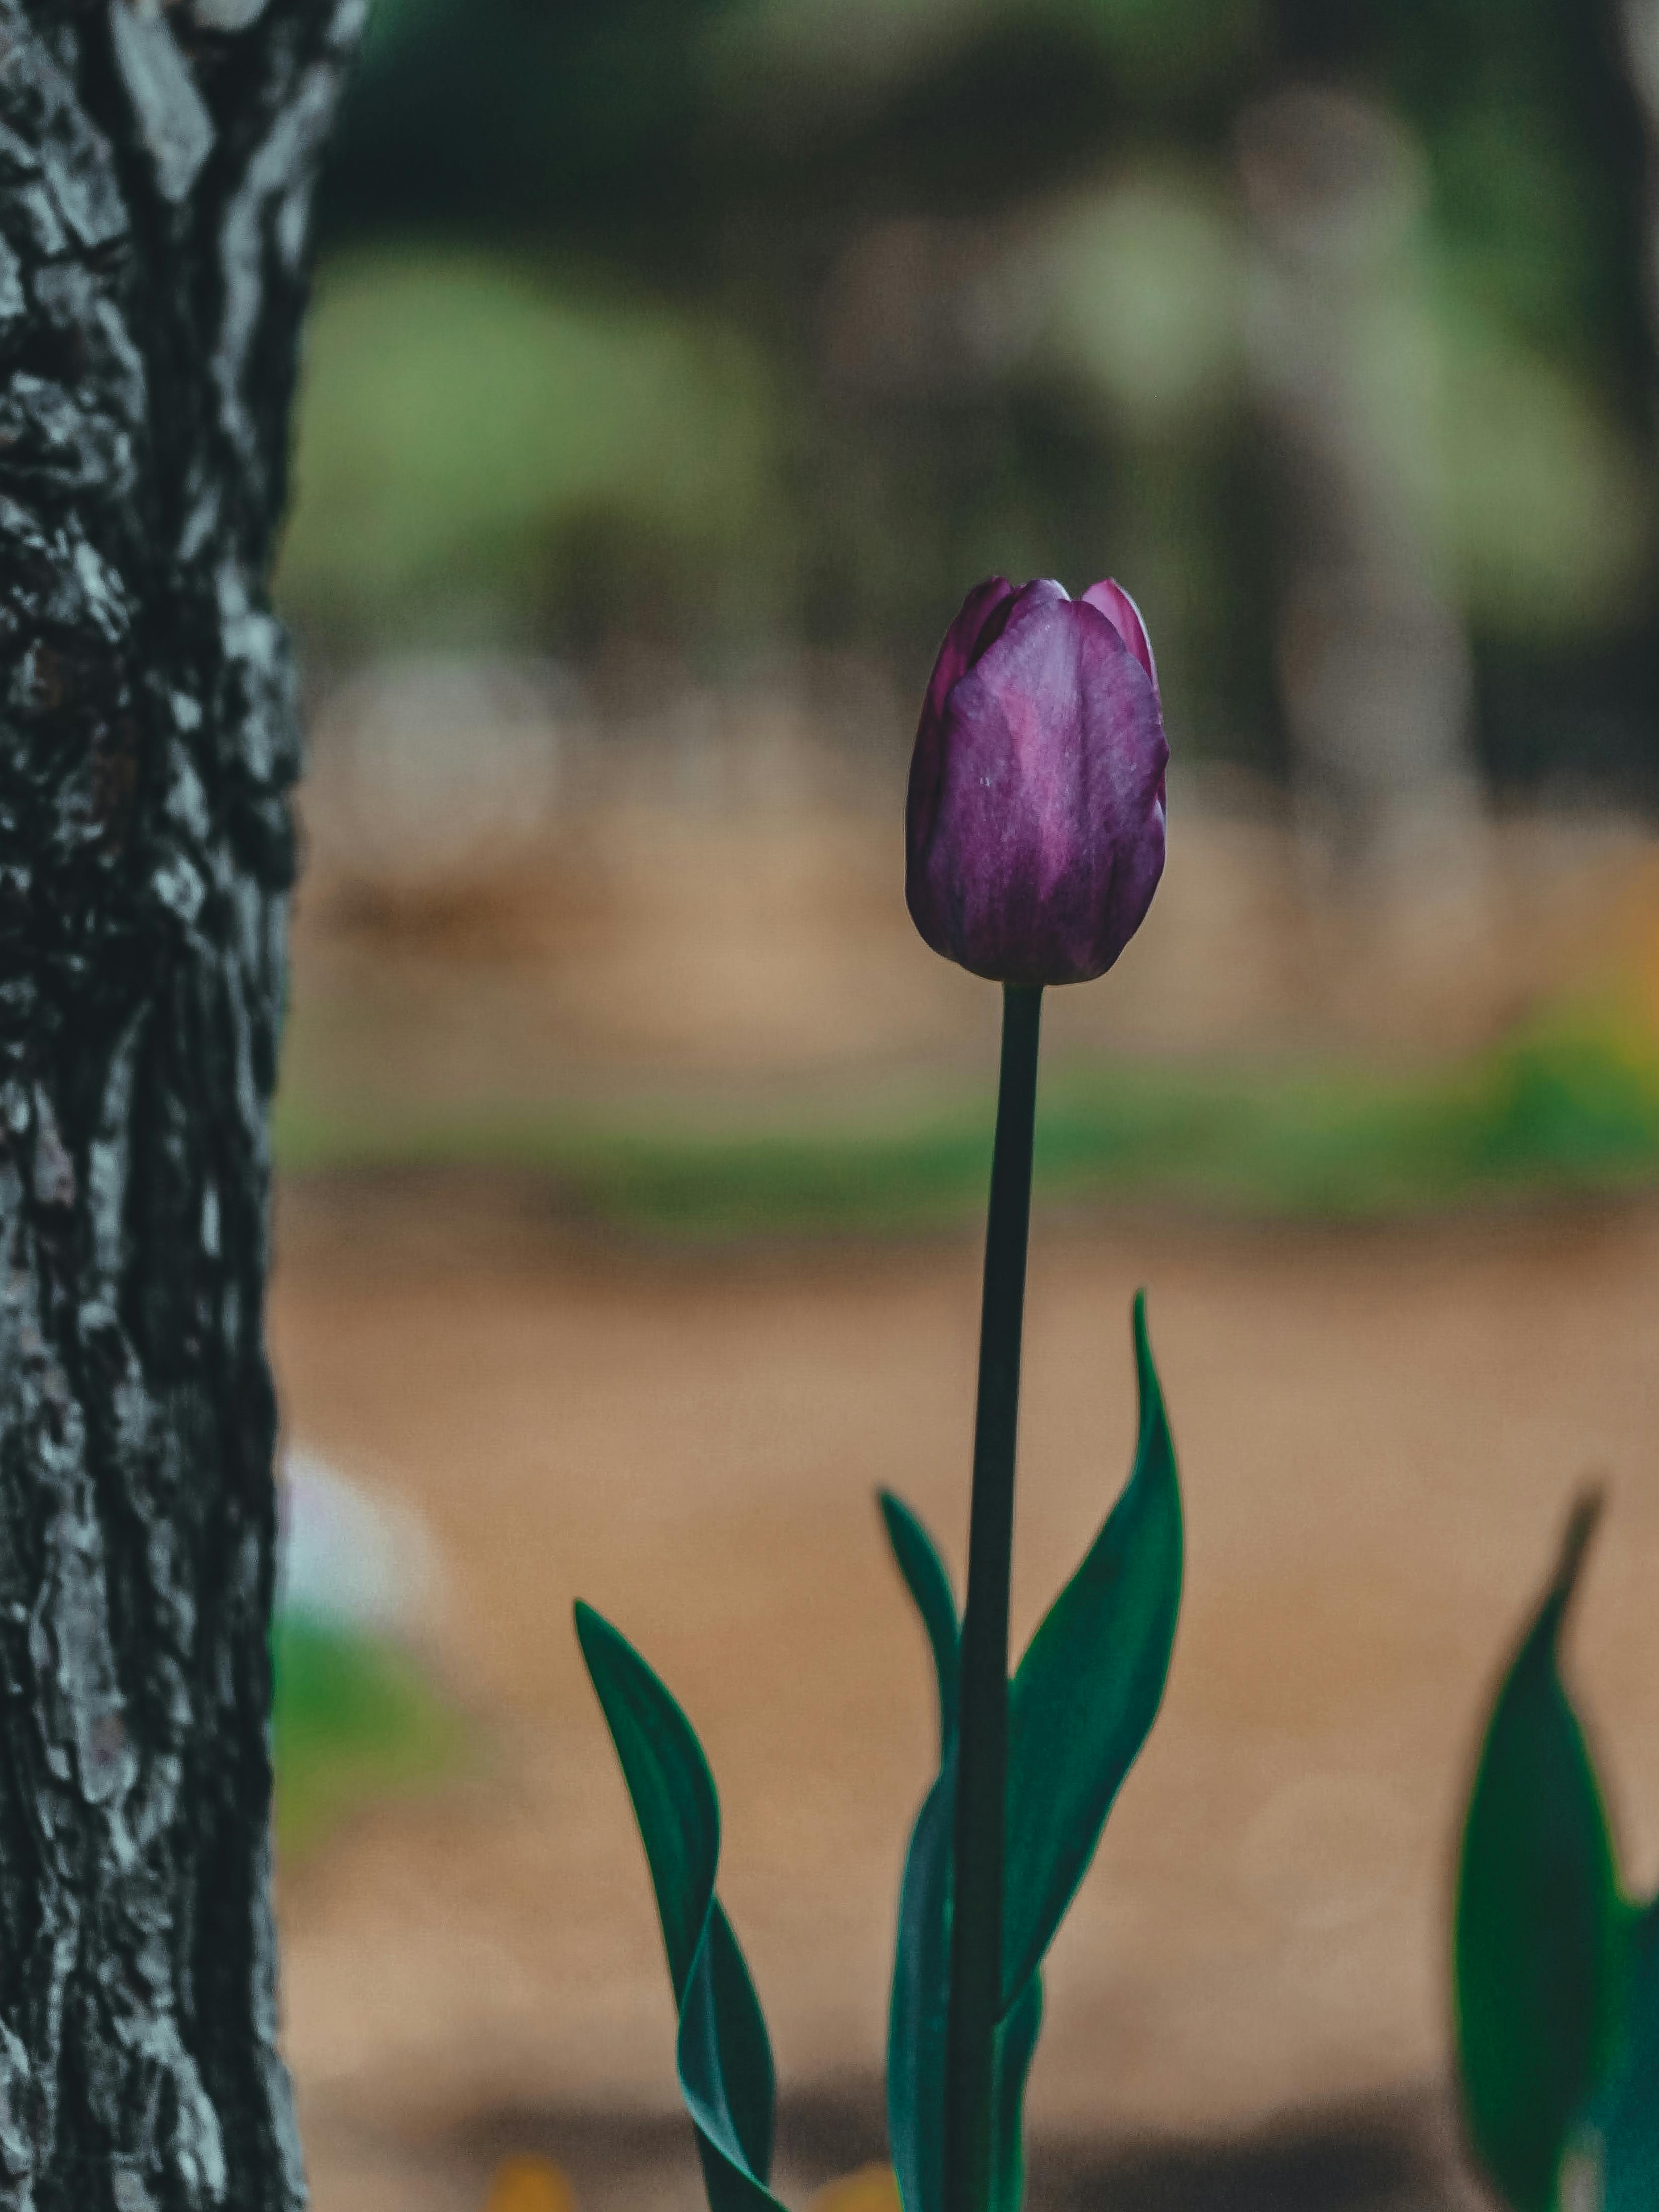 Nếu bạn đang tìm kiếm một hình nền đẹp và thú vị, hình nền hoa tulip tím sẽ là sự lựa chọn hoàn hảo. Với màu tím rực rỡ và sự nổi bật của những cánh hoa tulip, bạn sẽ nhận được niềm vui và sự sáng tạo mỗi khi sử dụng điện thoại của mình.